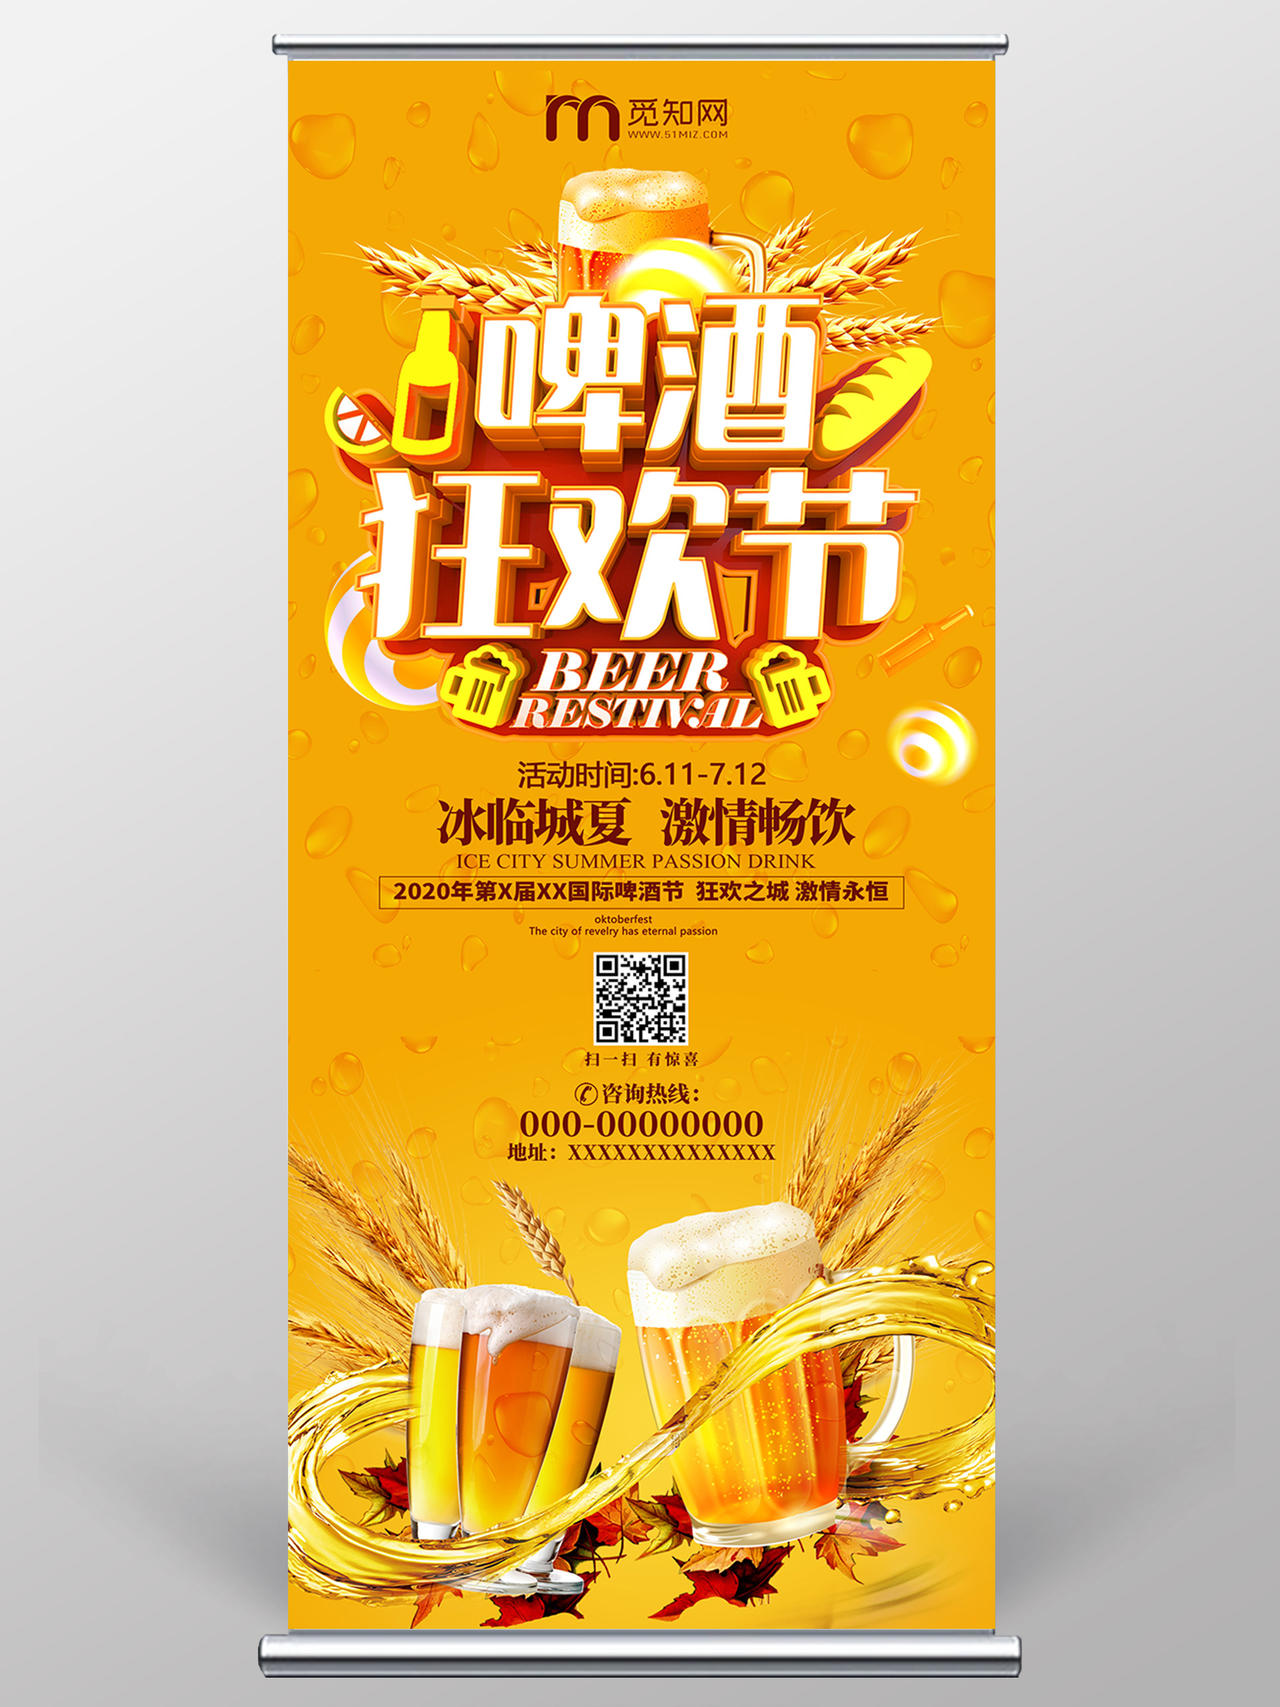 黄色啤酒狂欢节冰临城夏激情畅饮啤酒节展架